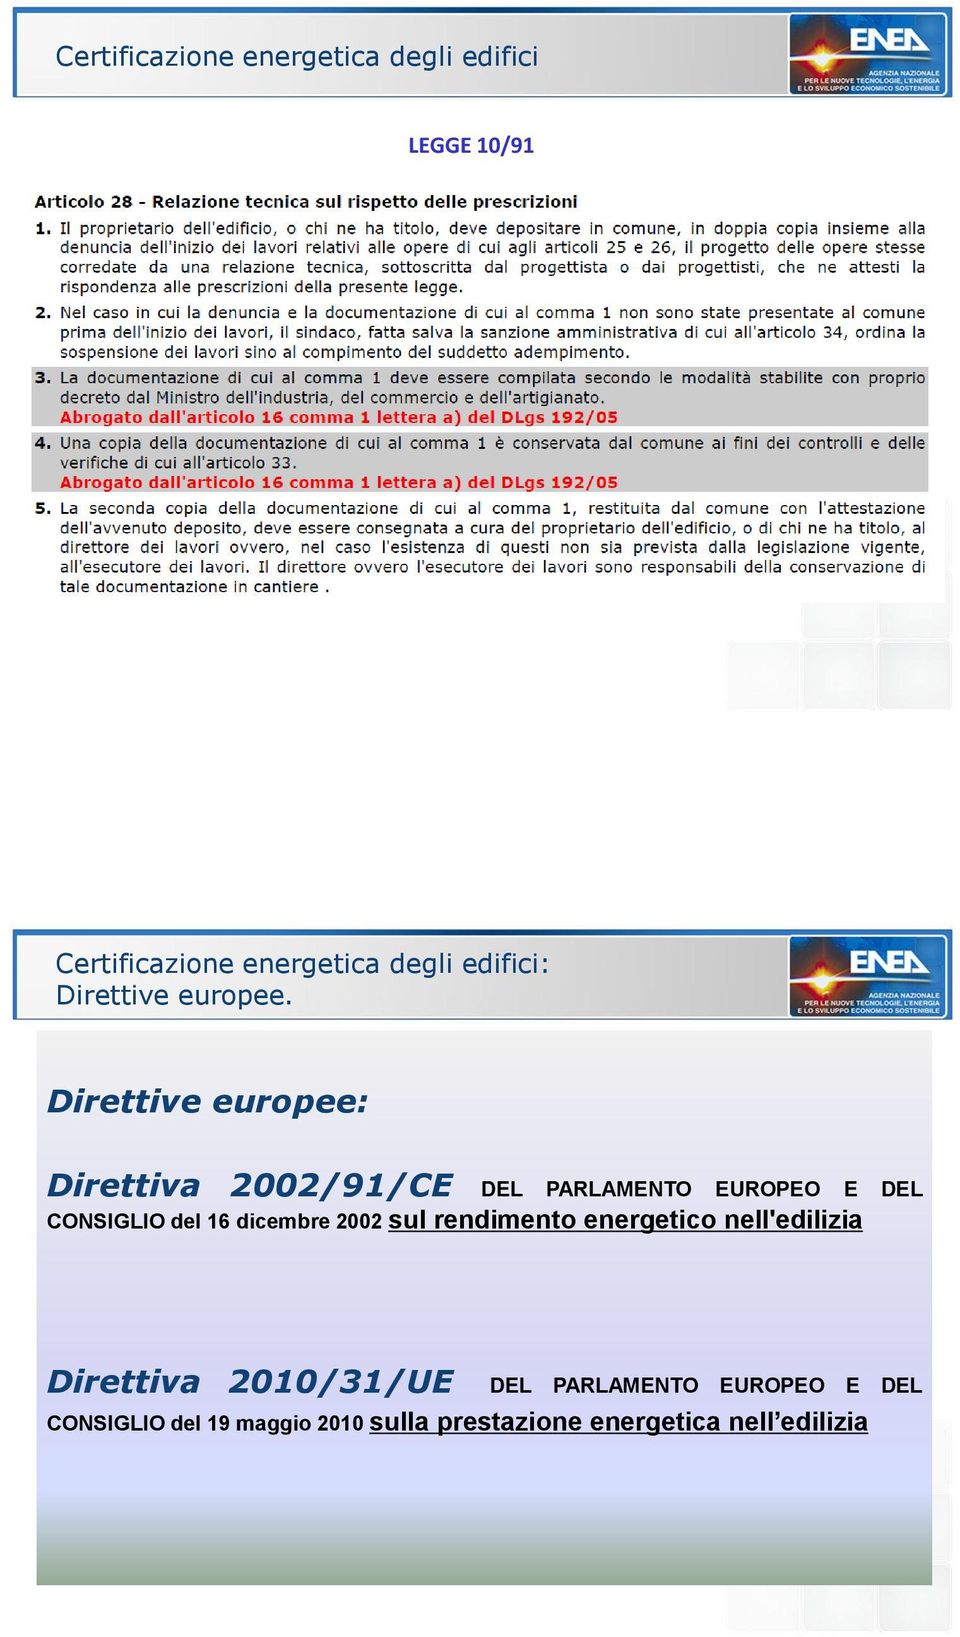 Direttive europee: Direttiva 2002/91/CE DEL PARLAMENTO EUROPEO E DEL CONSIGLIO del 16